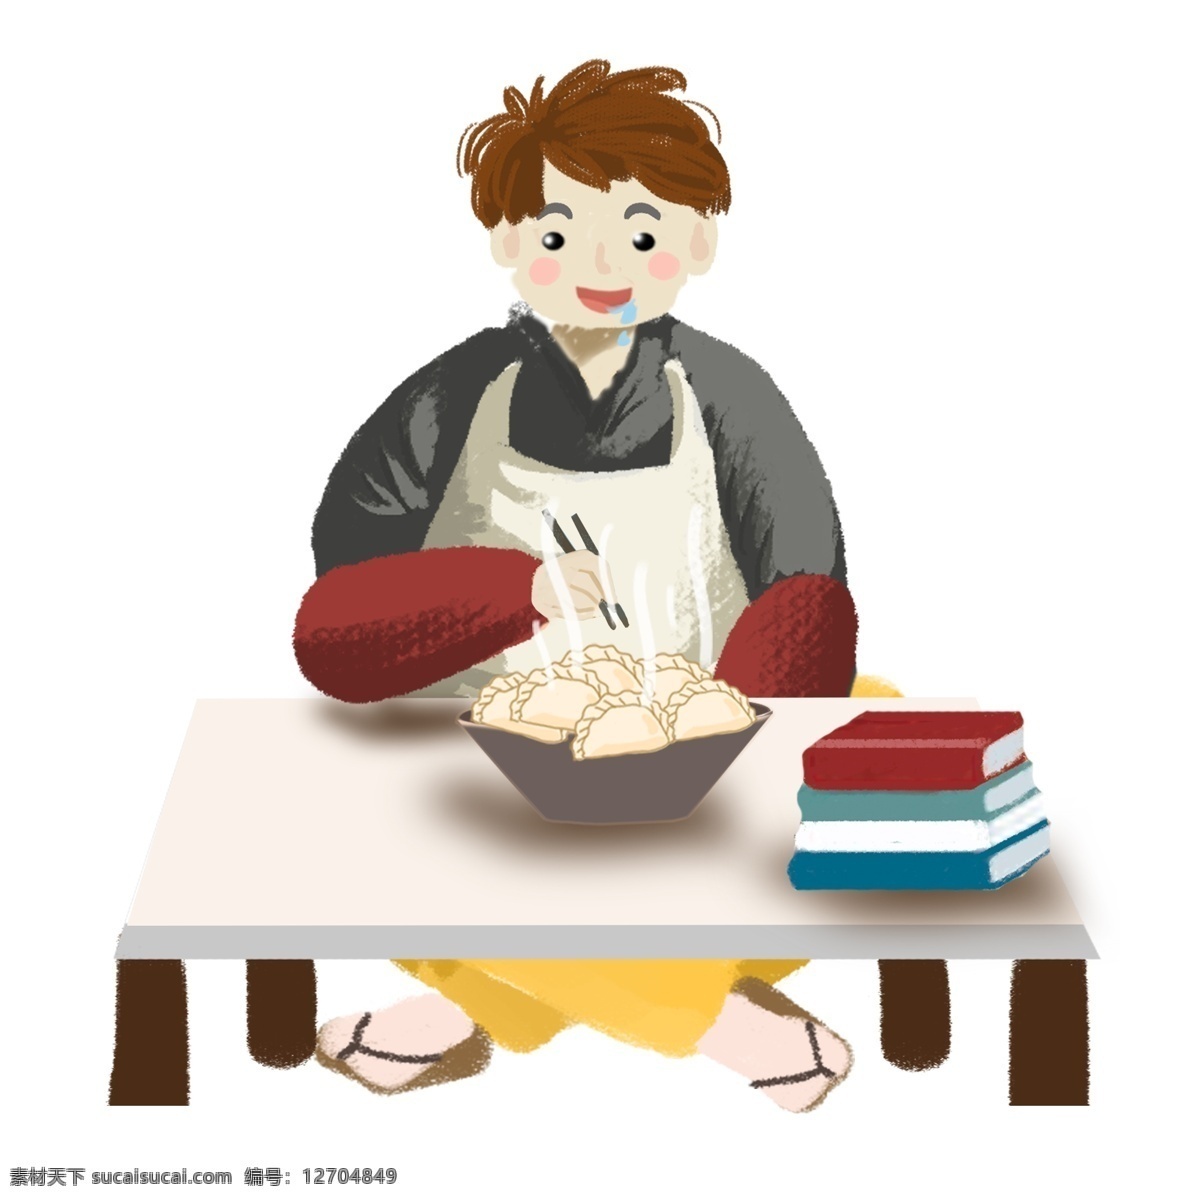 冬至 吃 饺子 流口水 男孩 人物 桌子 插画 手绘 男生 吃饺子 一碗饺子